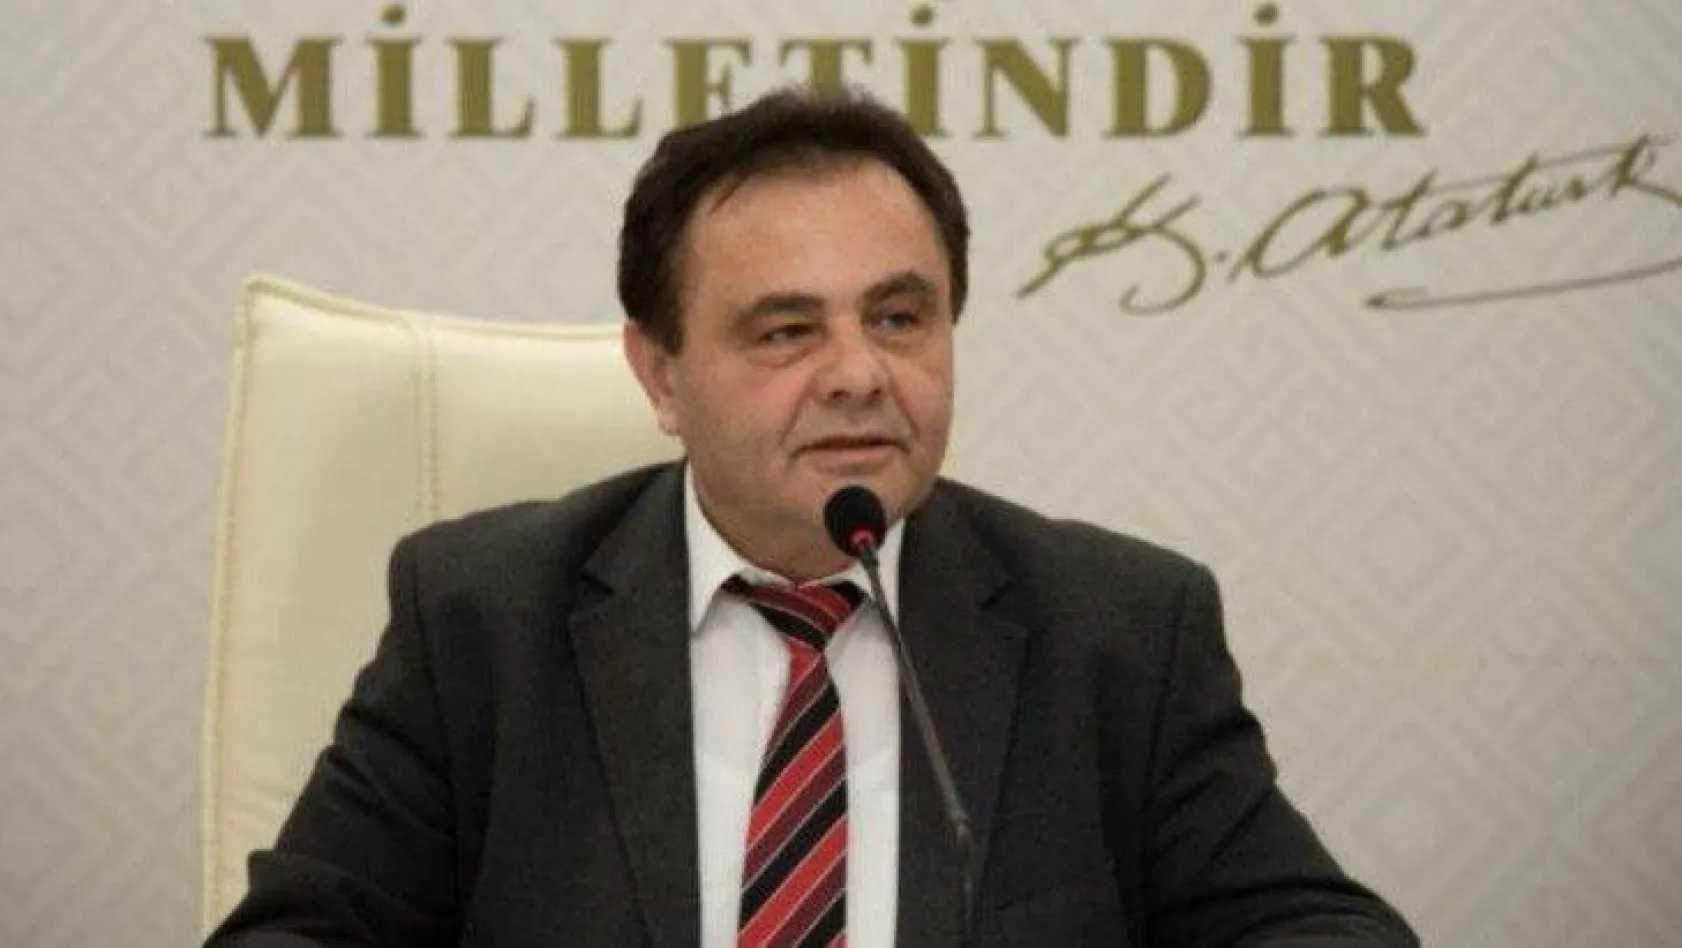 Partisinden ihraç olan CHP'li Belediye Başkanı Şahin'den ilk açıklama